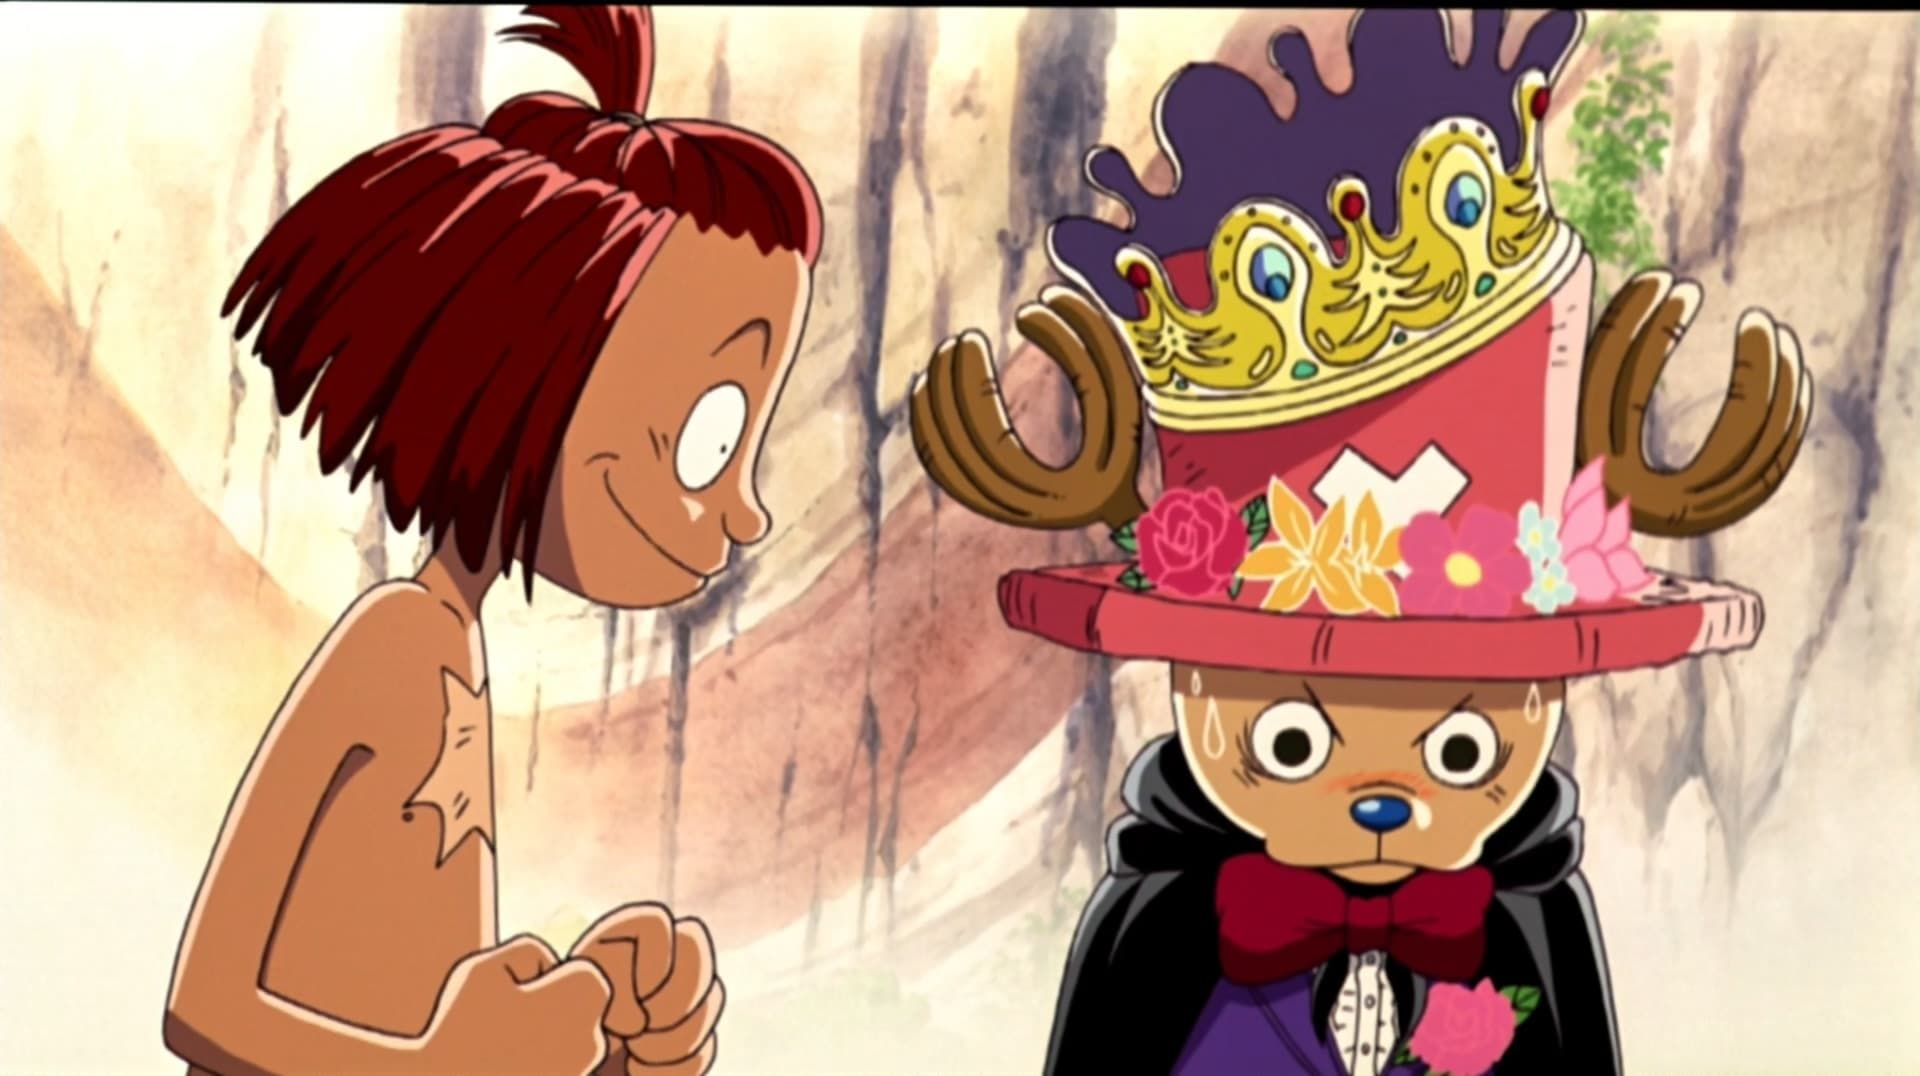 One Piece Edição Especial (HD) - Skypiea (136-206) O Deus Enel! Adeus aos  Sobreviventes! - Assista na Crunchyroll